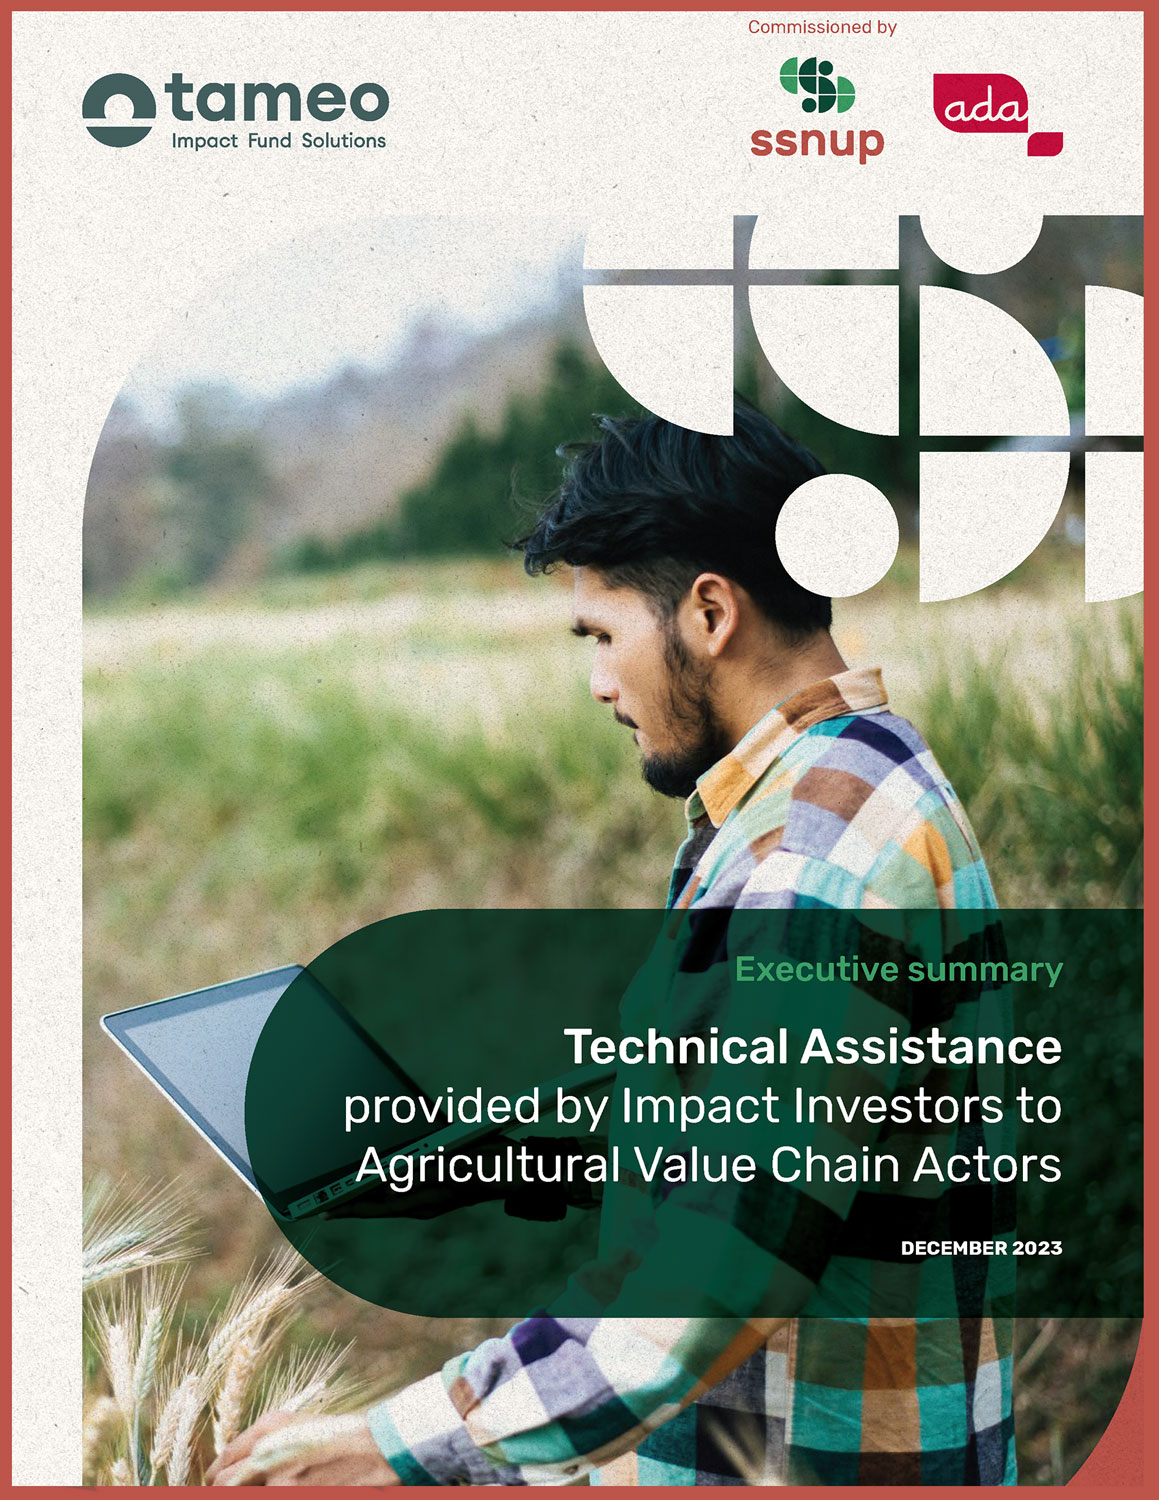 Résumé - Assistance technique fournie par des investisseurs d'impact à des acteurs de la chaîne de valeur agricole